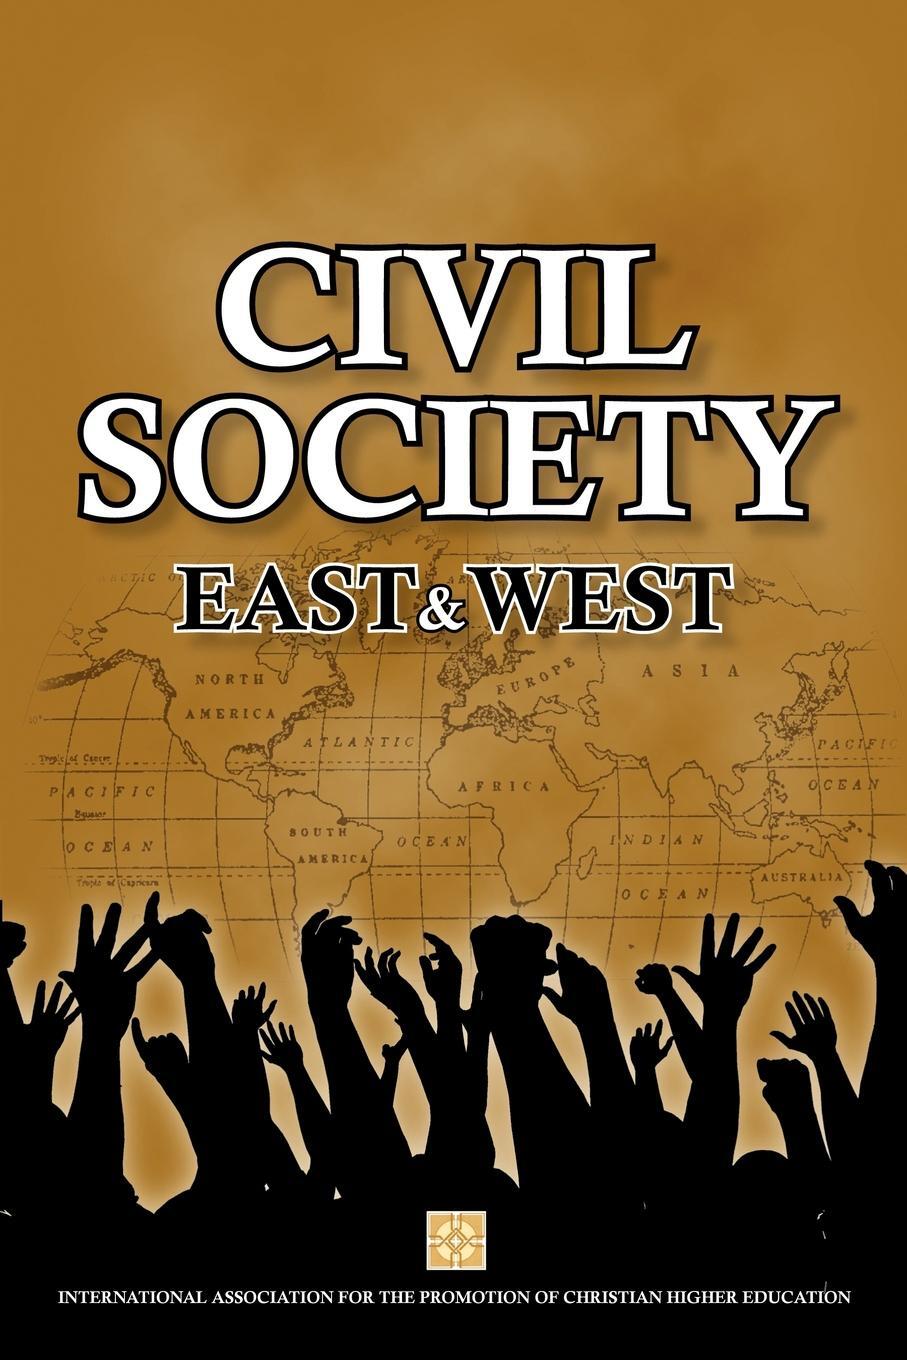 E society. East Society. Society.